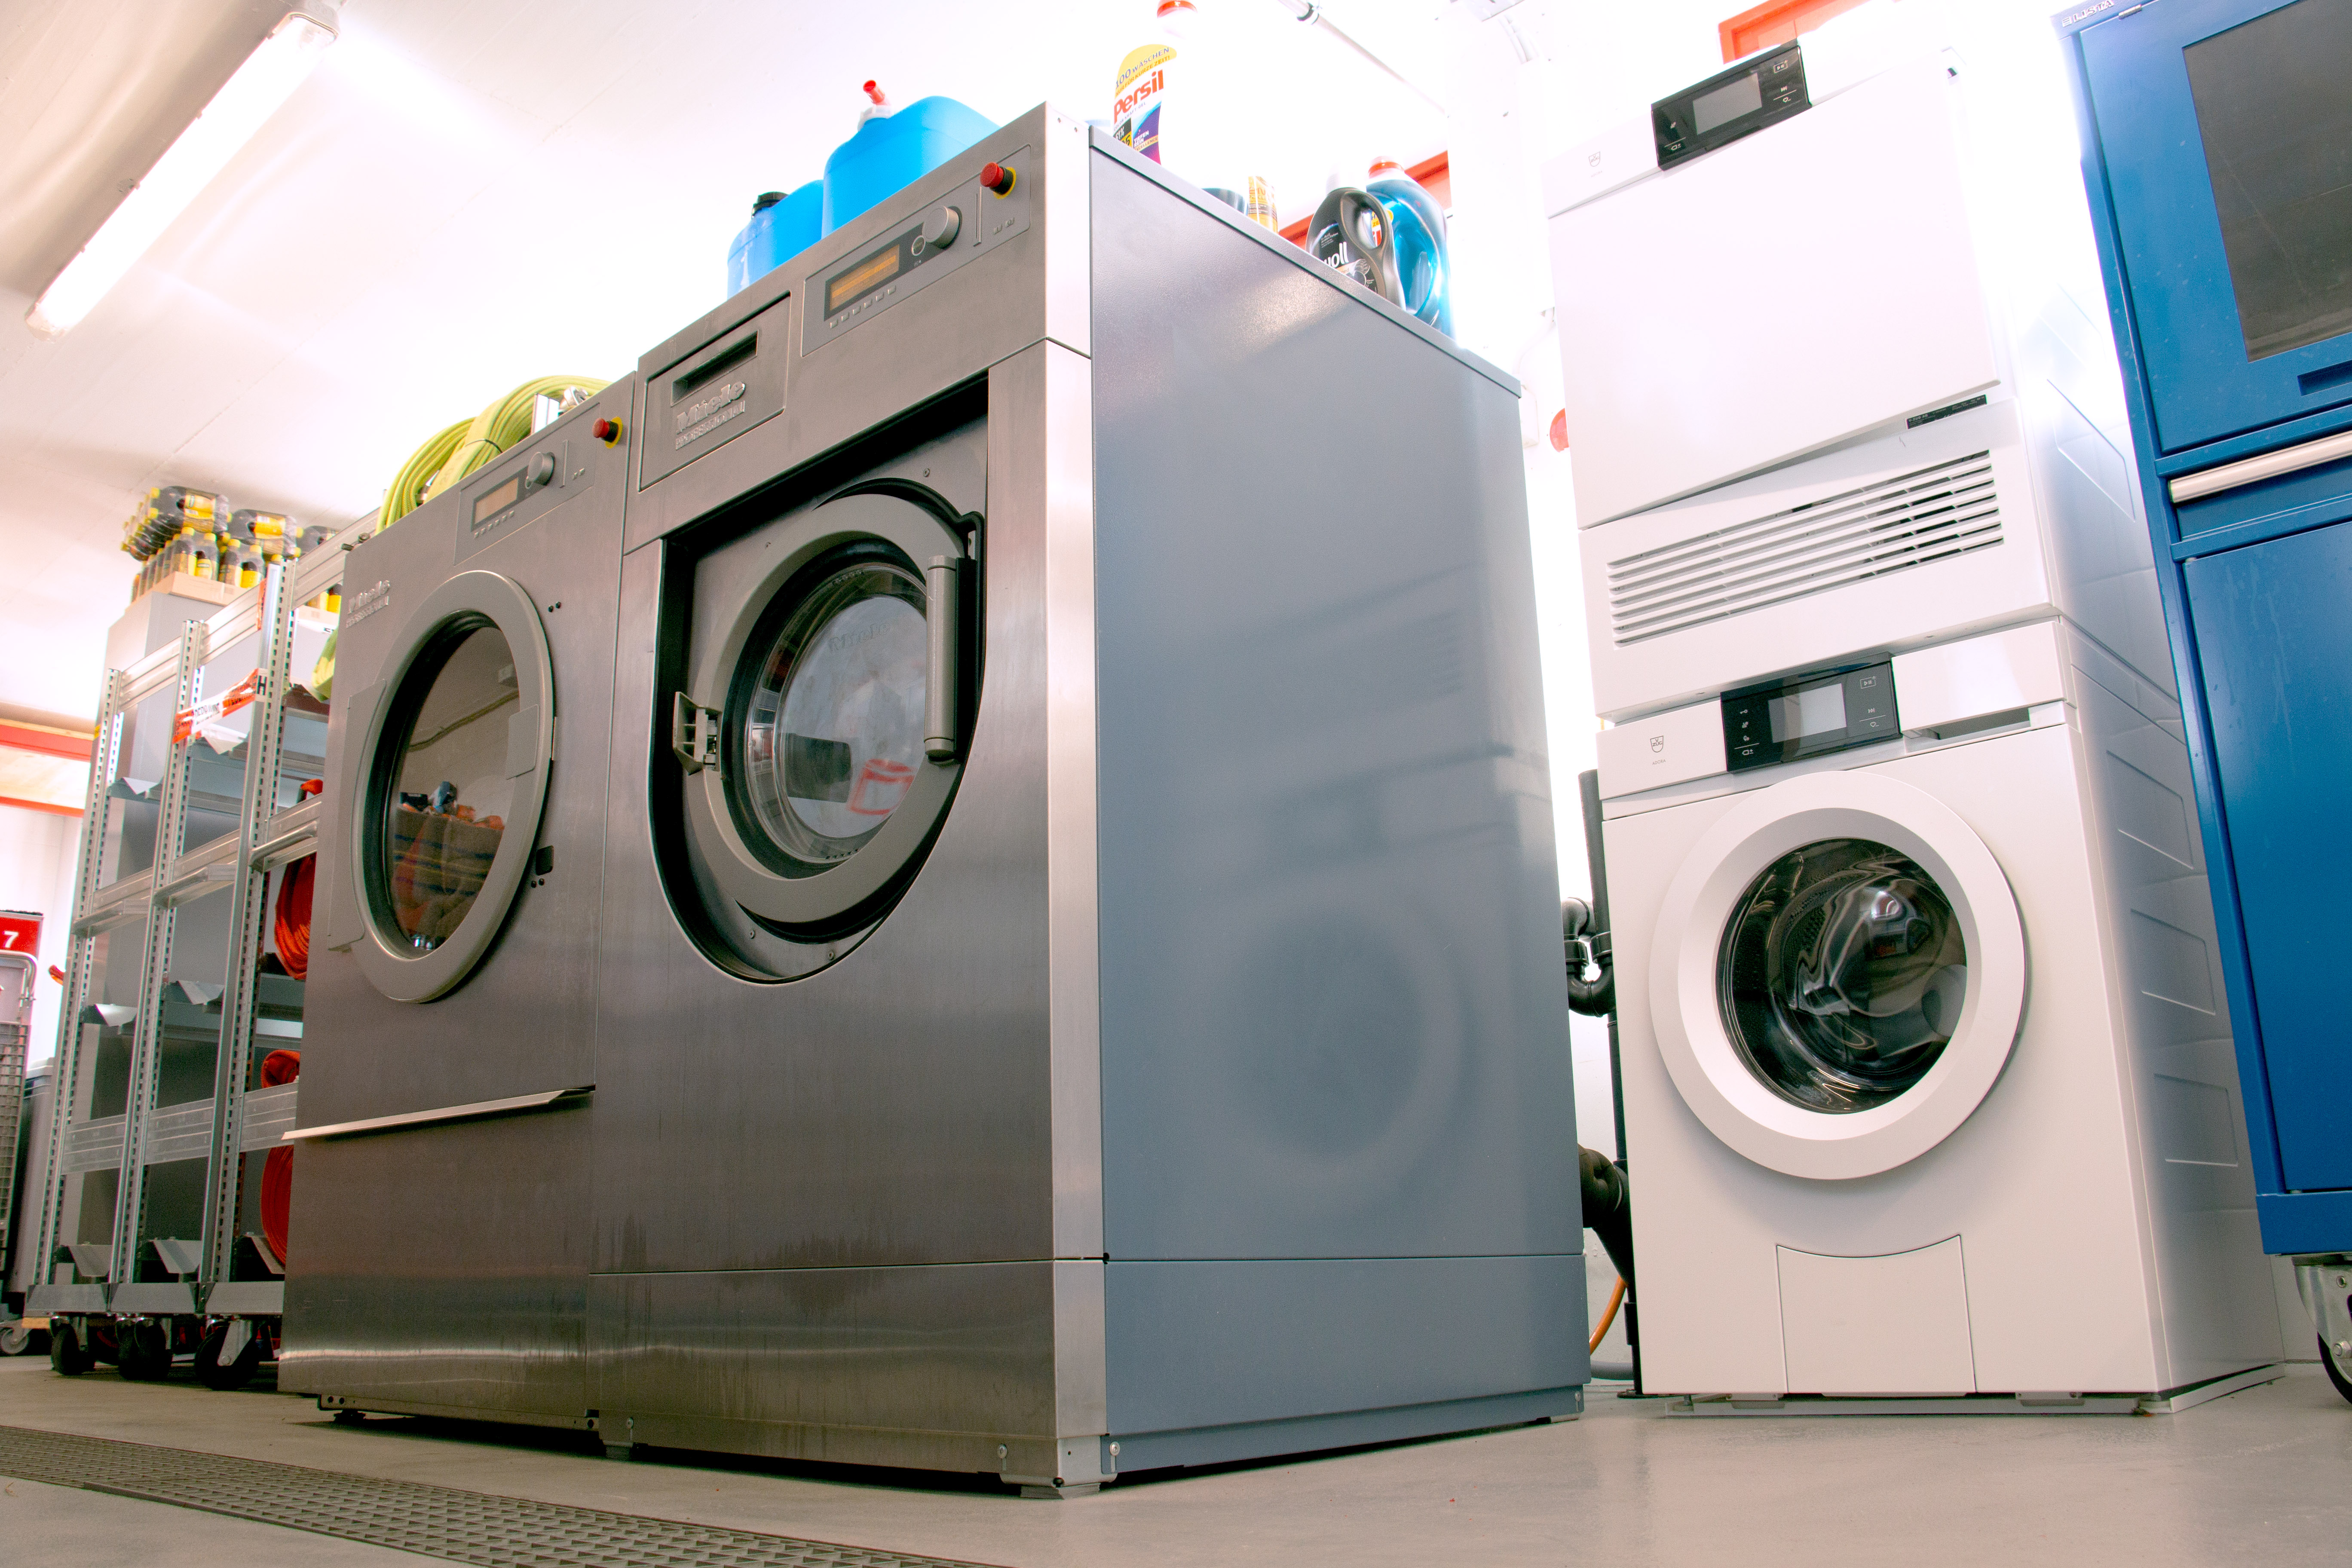 Da die Schutzausrüstung eine spezielle Pflege braucht, werden diese in einer entsprechenden Waschmaschine gewaschen und anschliessend im Tumbler getrocknet.